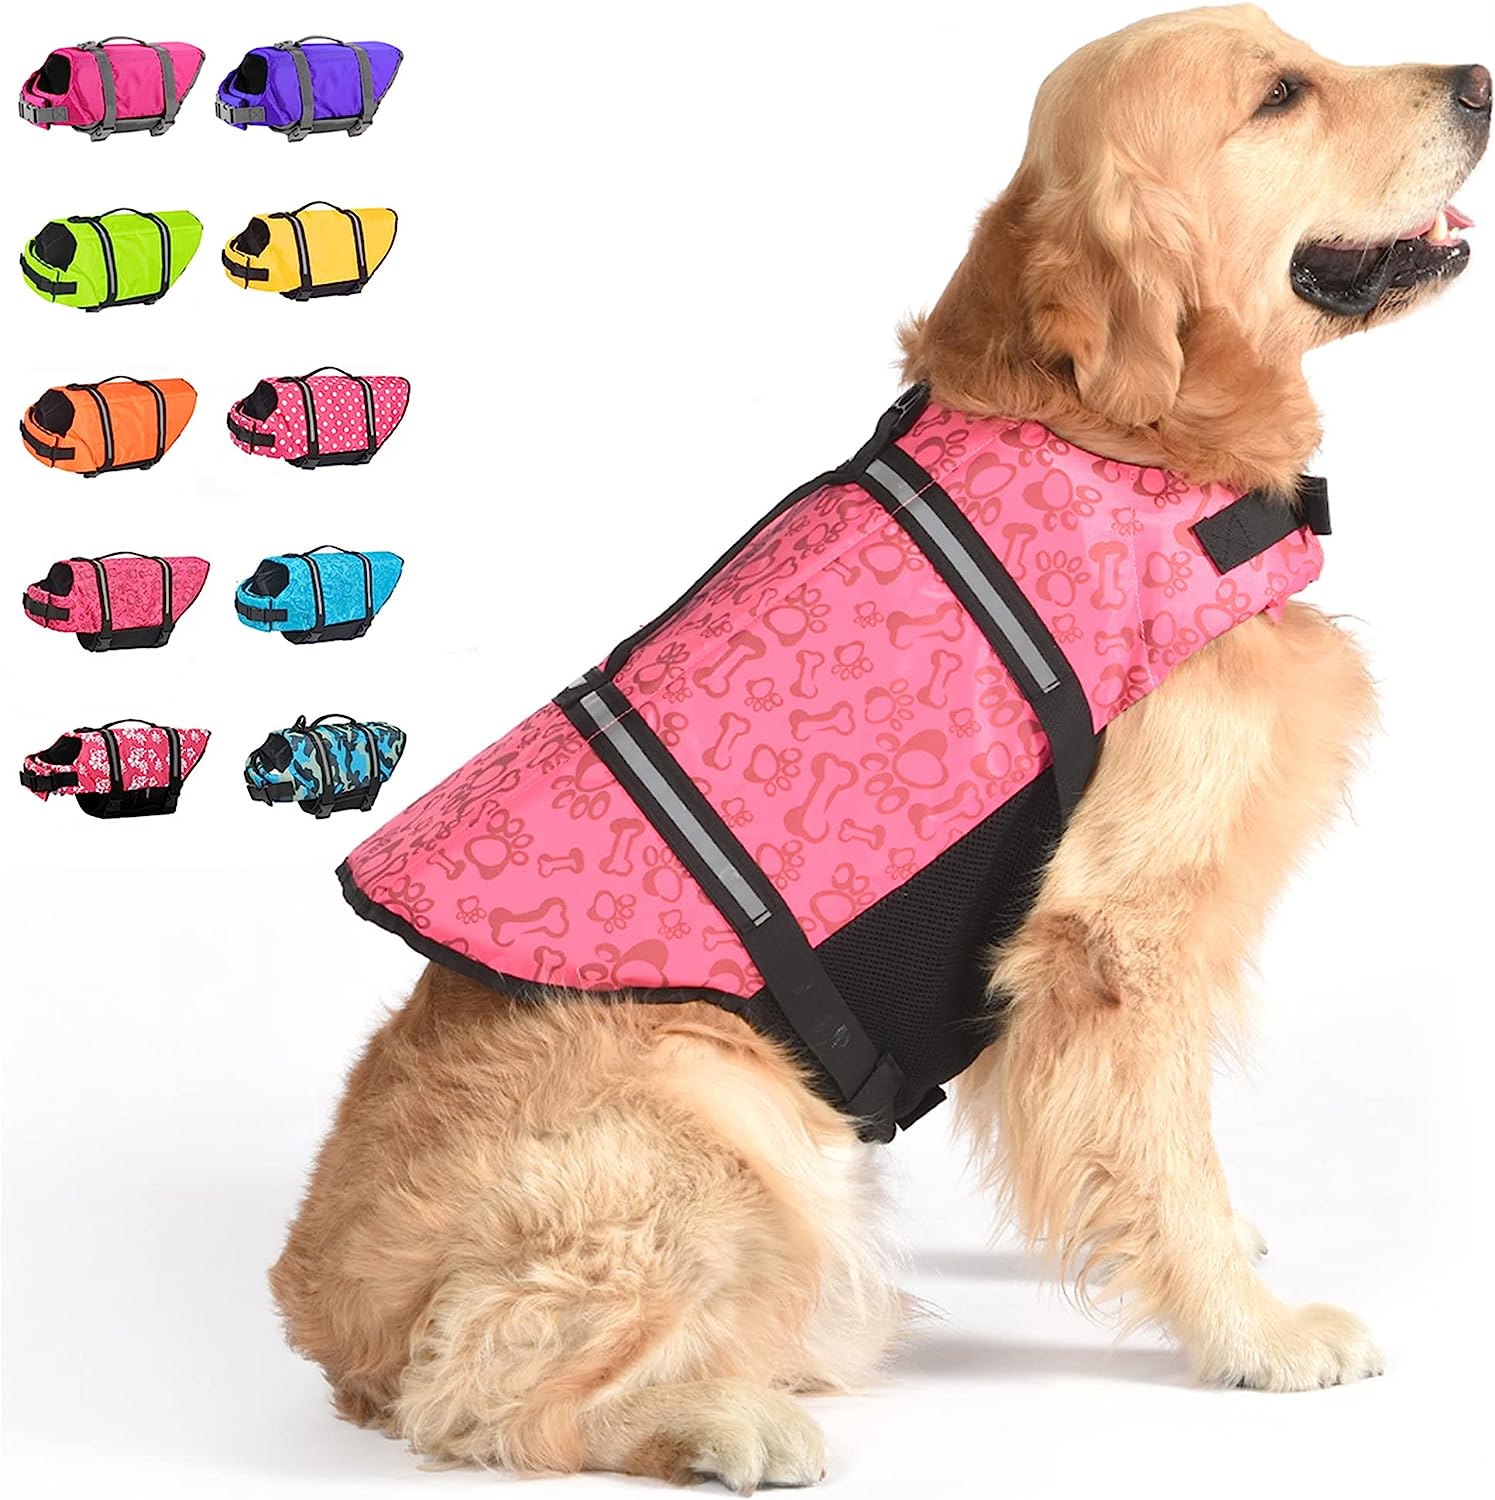 Ukhuseleko Swimsuit Preserver kunye Reflective Stripes Dog Life Jacket